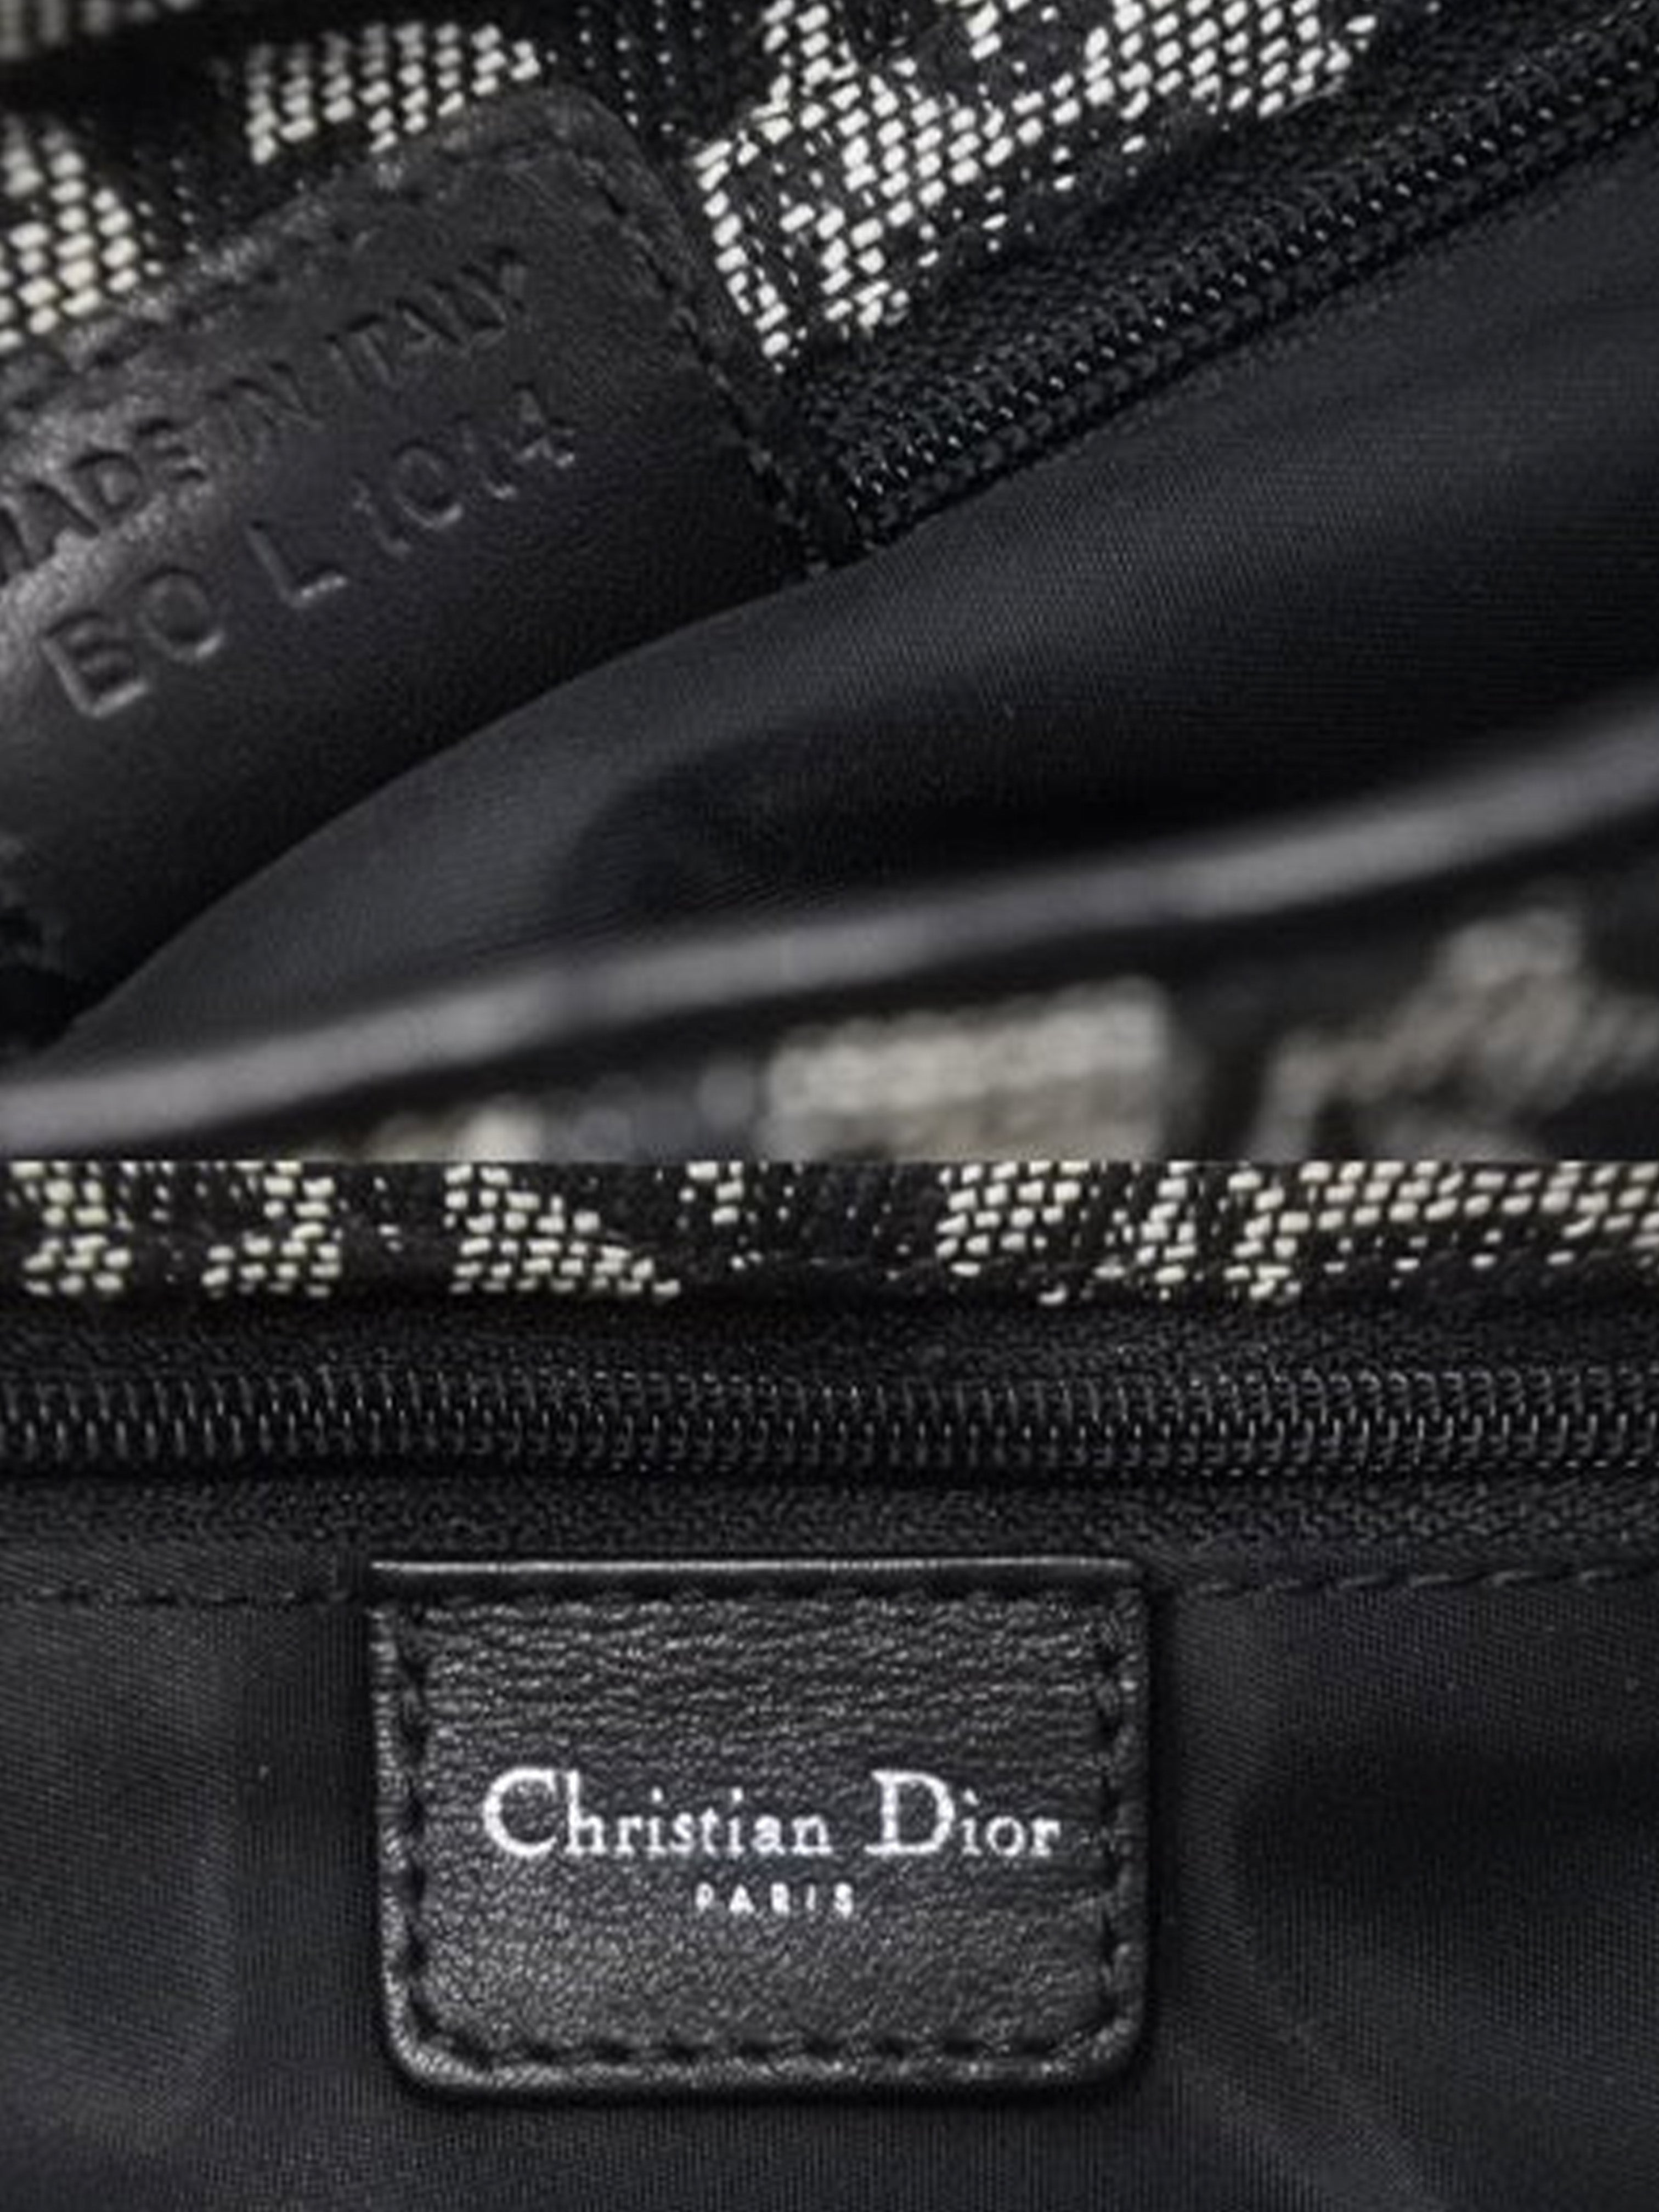 Christian Dior 2004 Trotter Shoulder Bag